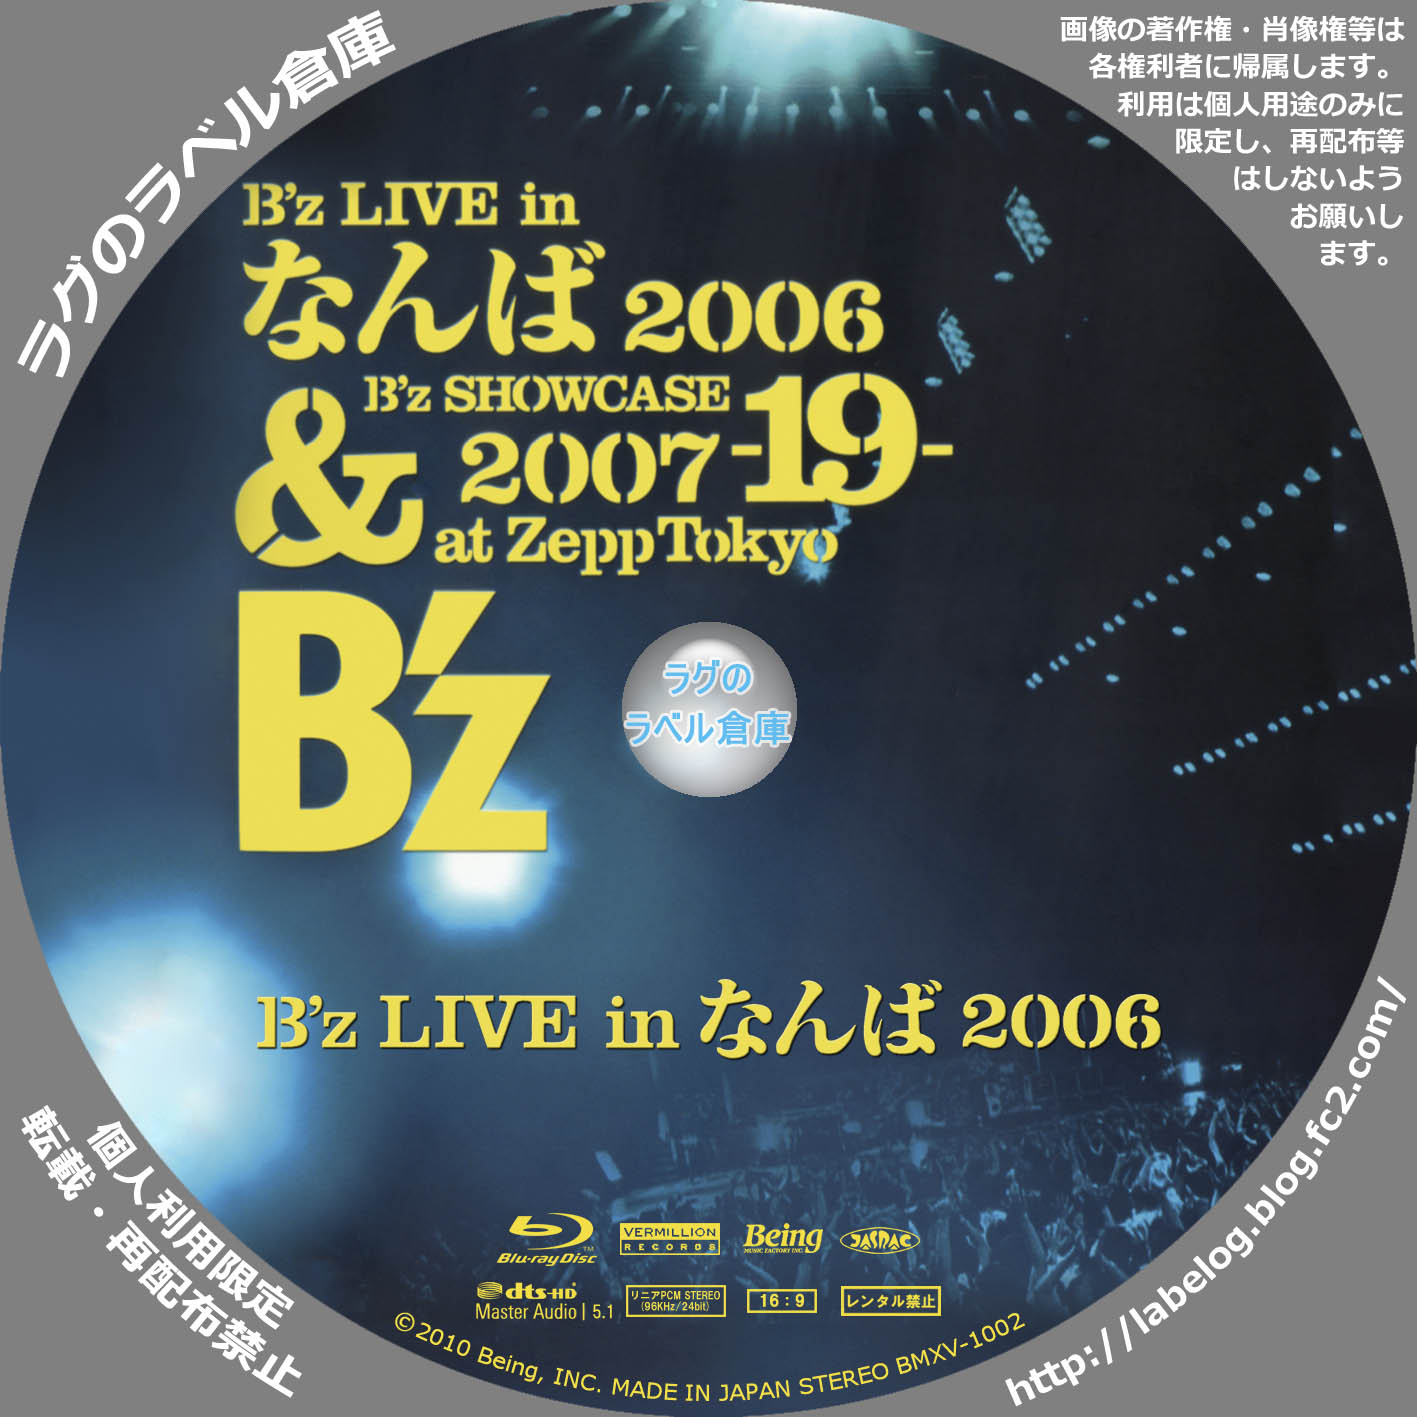 B'z LIVE in なんば 2006 & B'z SHOWCASE 2007 -19- at Zepp Tokyo 